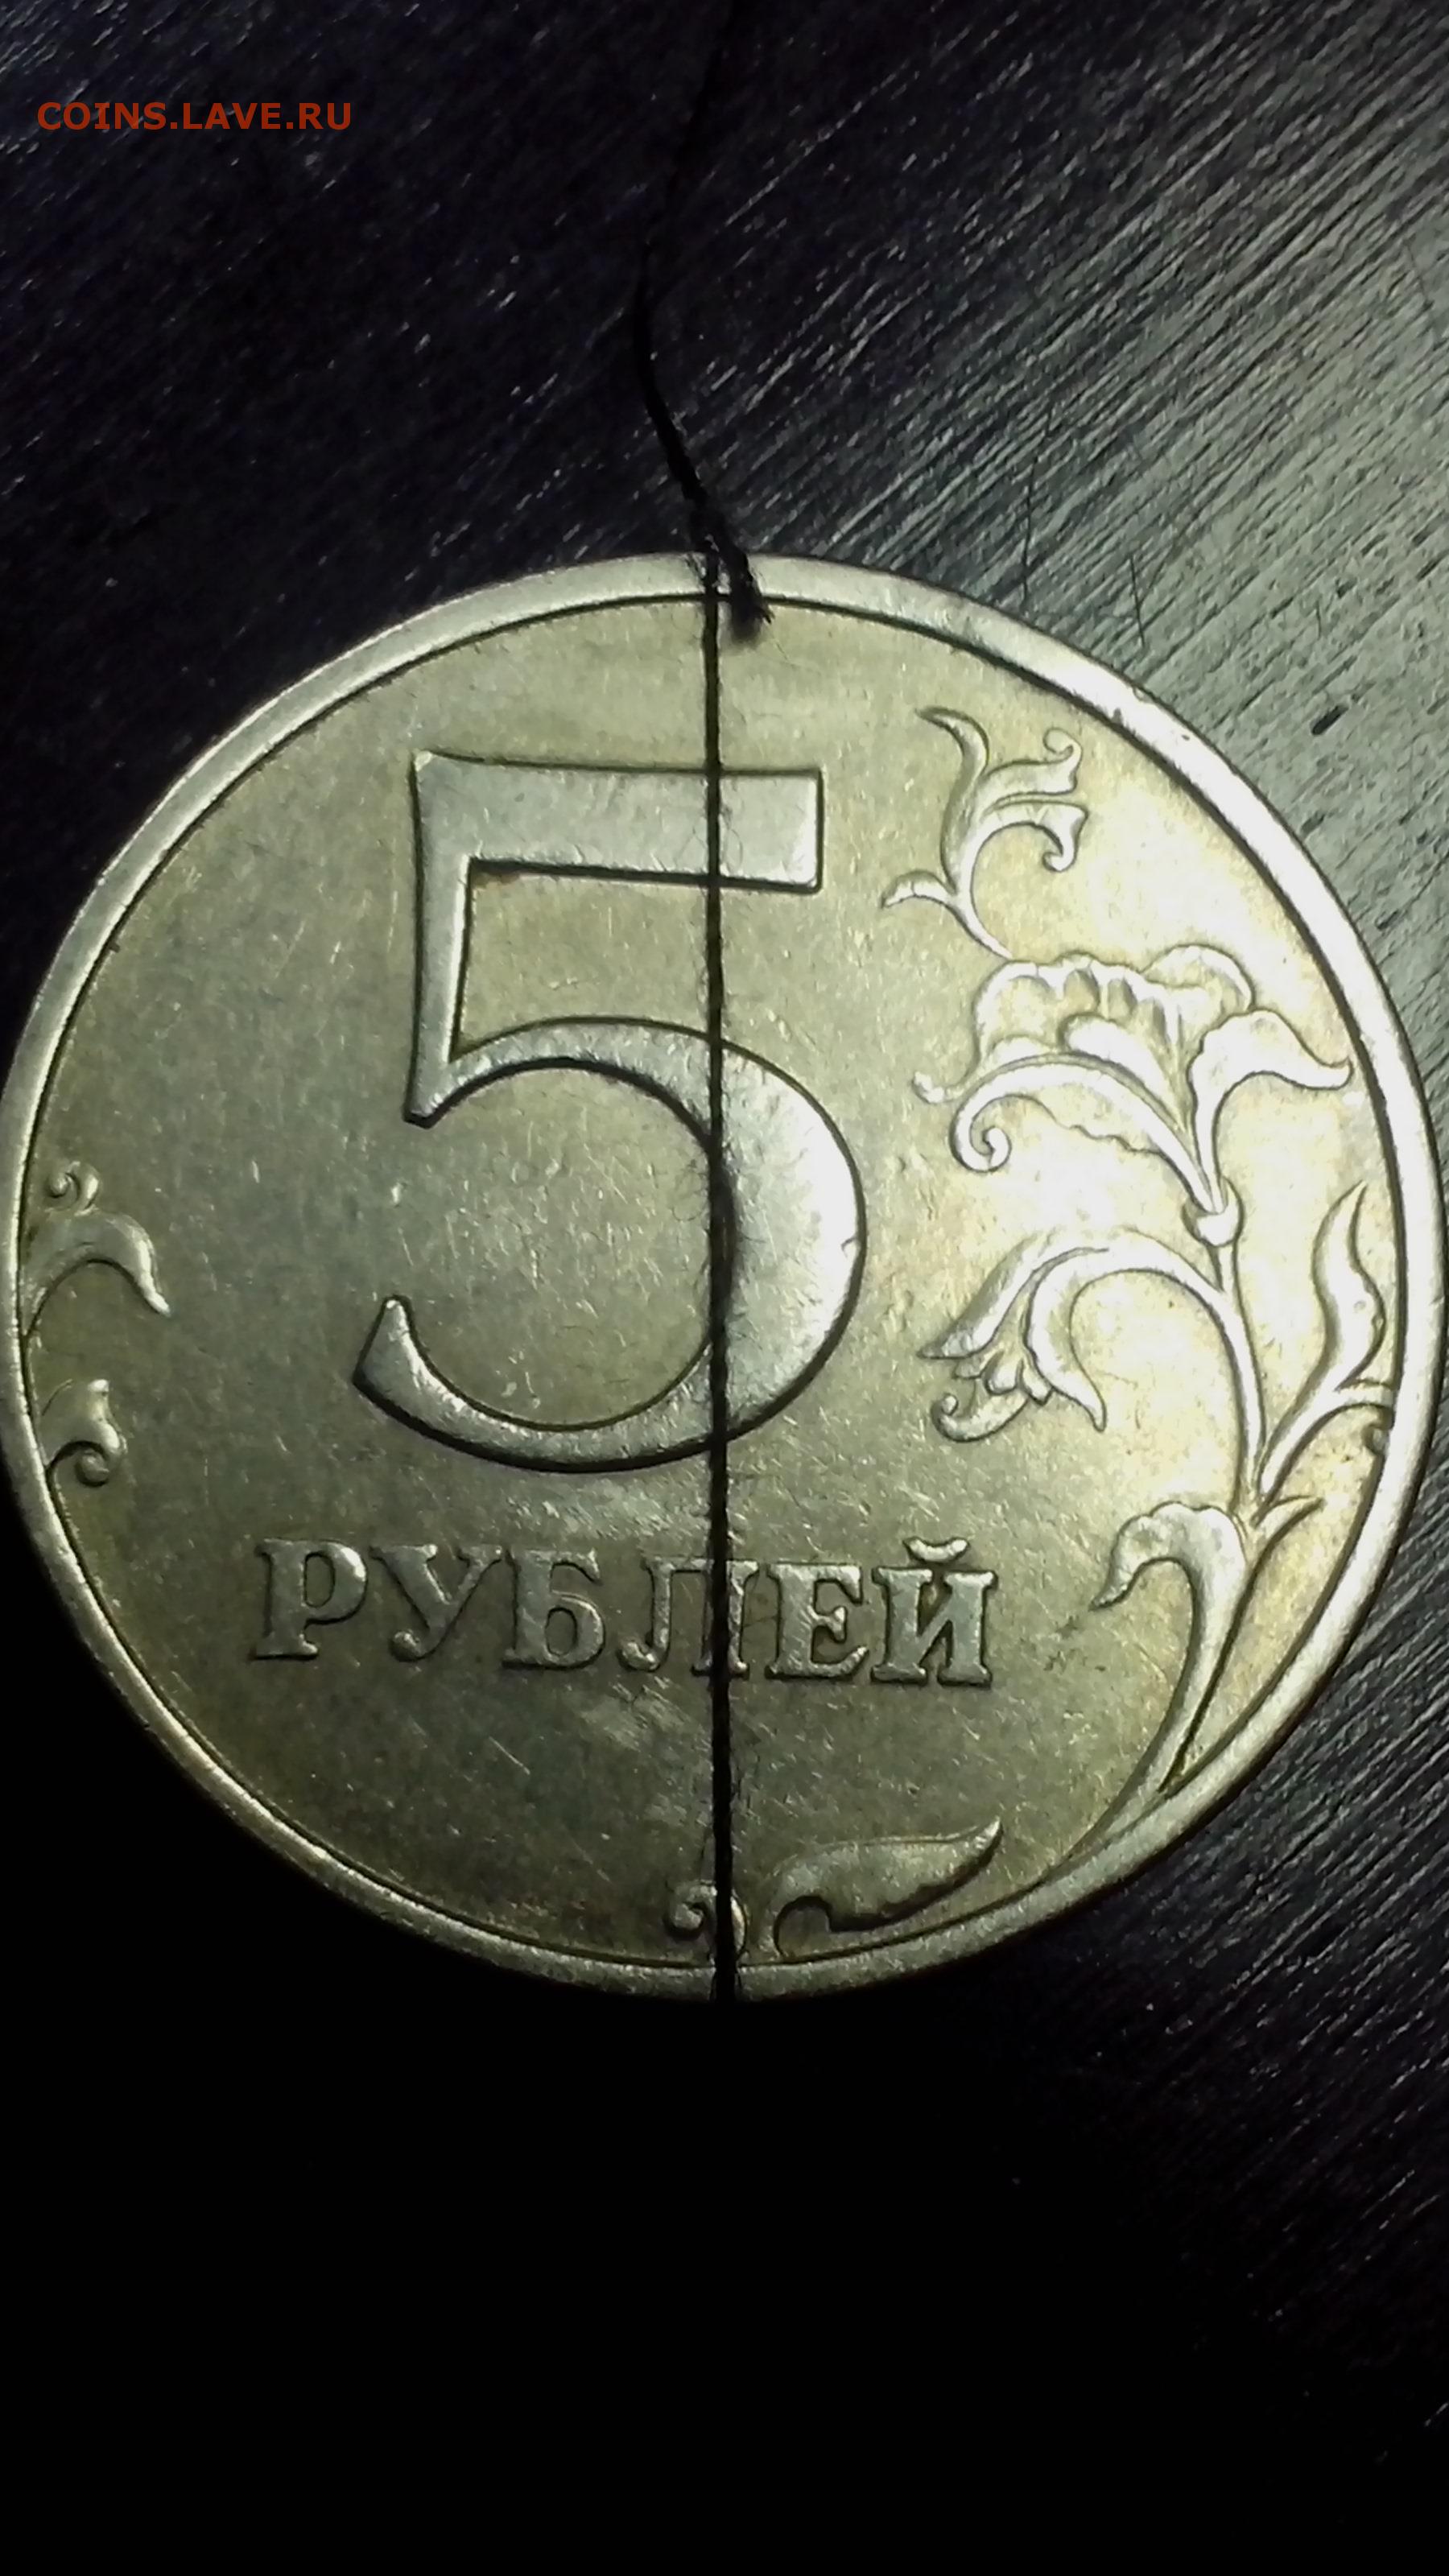 5 рублей россии 1997. 5 Рублей 1997 года ММД. 5 Рублей 1997. 5 Рублей 1997 года. Монета 5 рублей 1997 года.